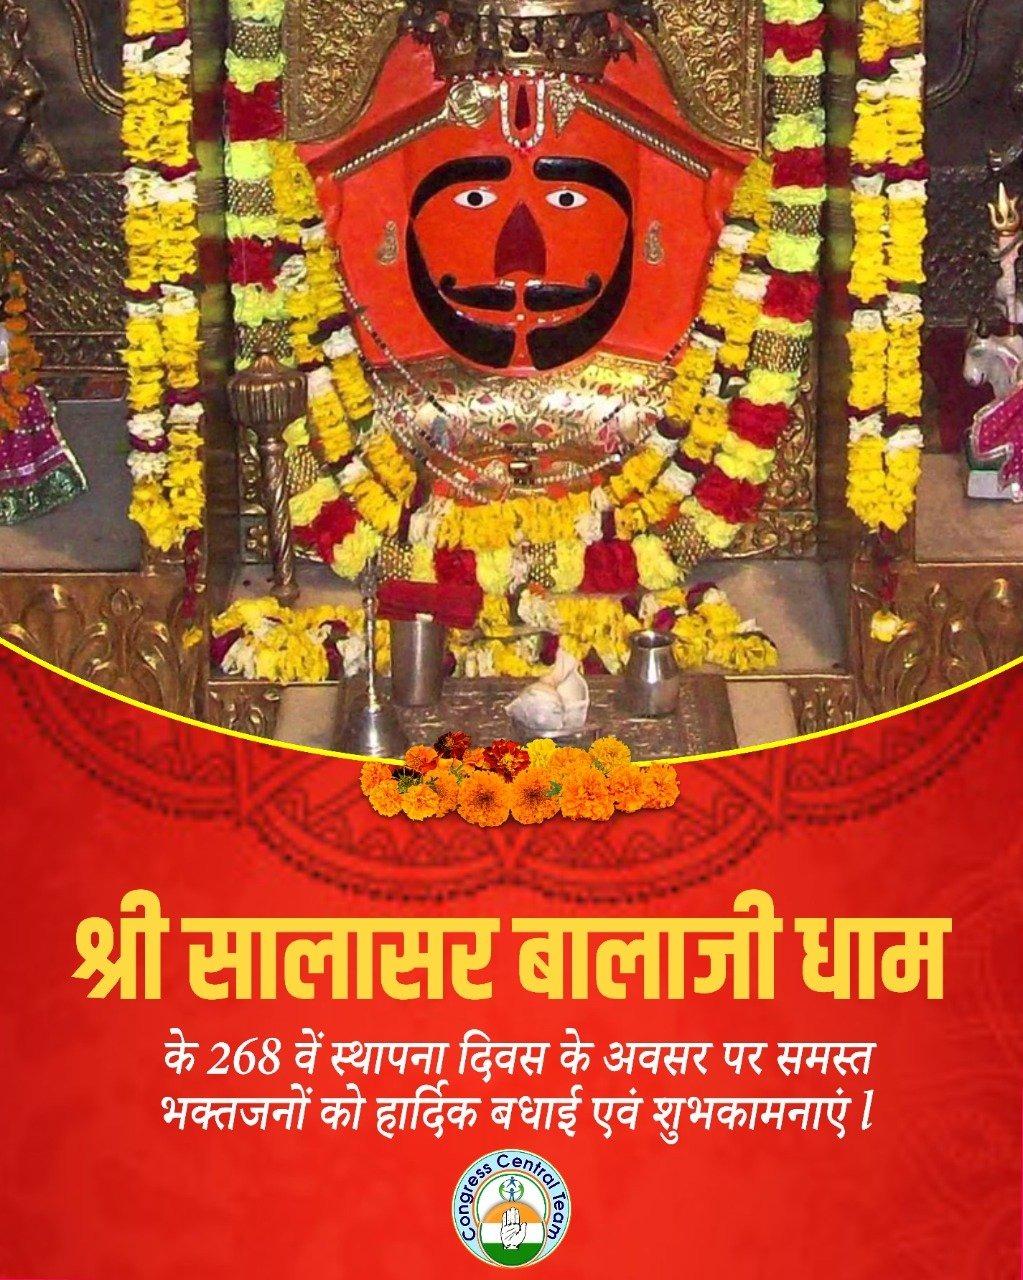 श्री सालासर बालाजी मंदिर के 268वें स्थापना दिवस के पावन अवसर पर आप सभी को हार्दिक शुभकामनाएं।